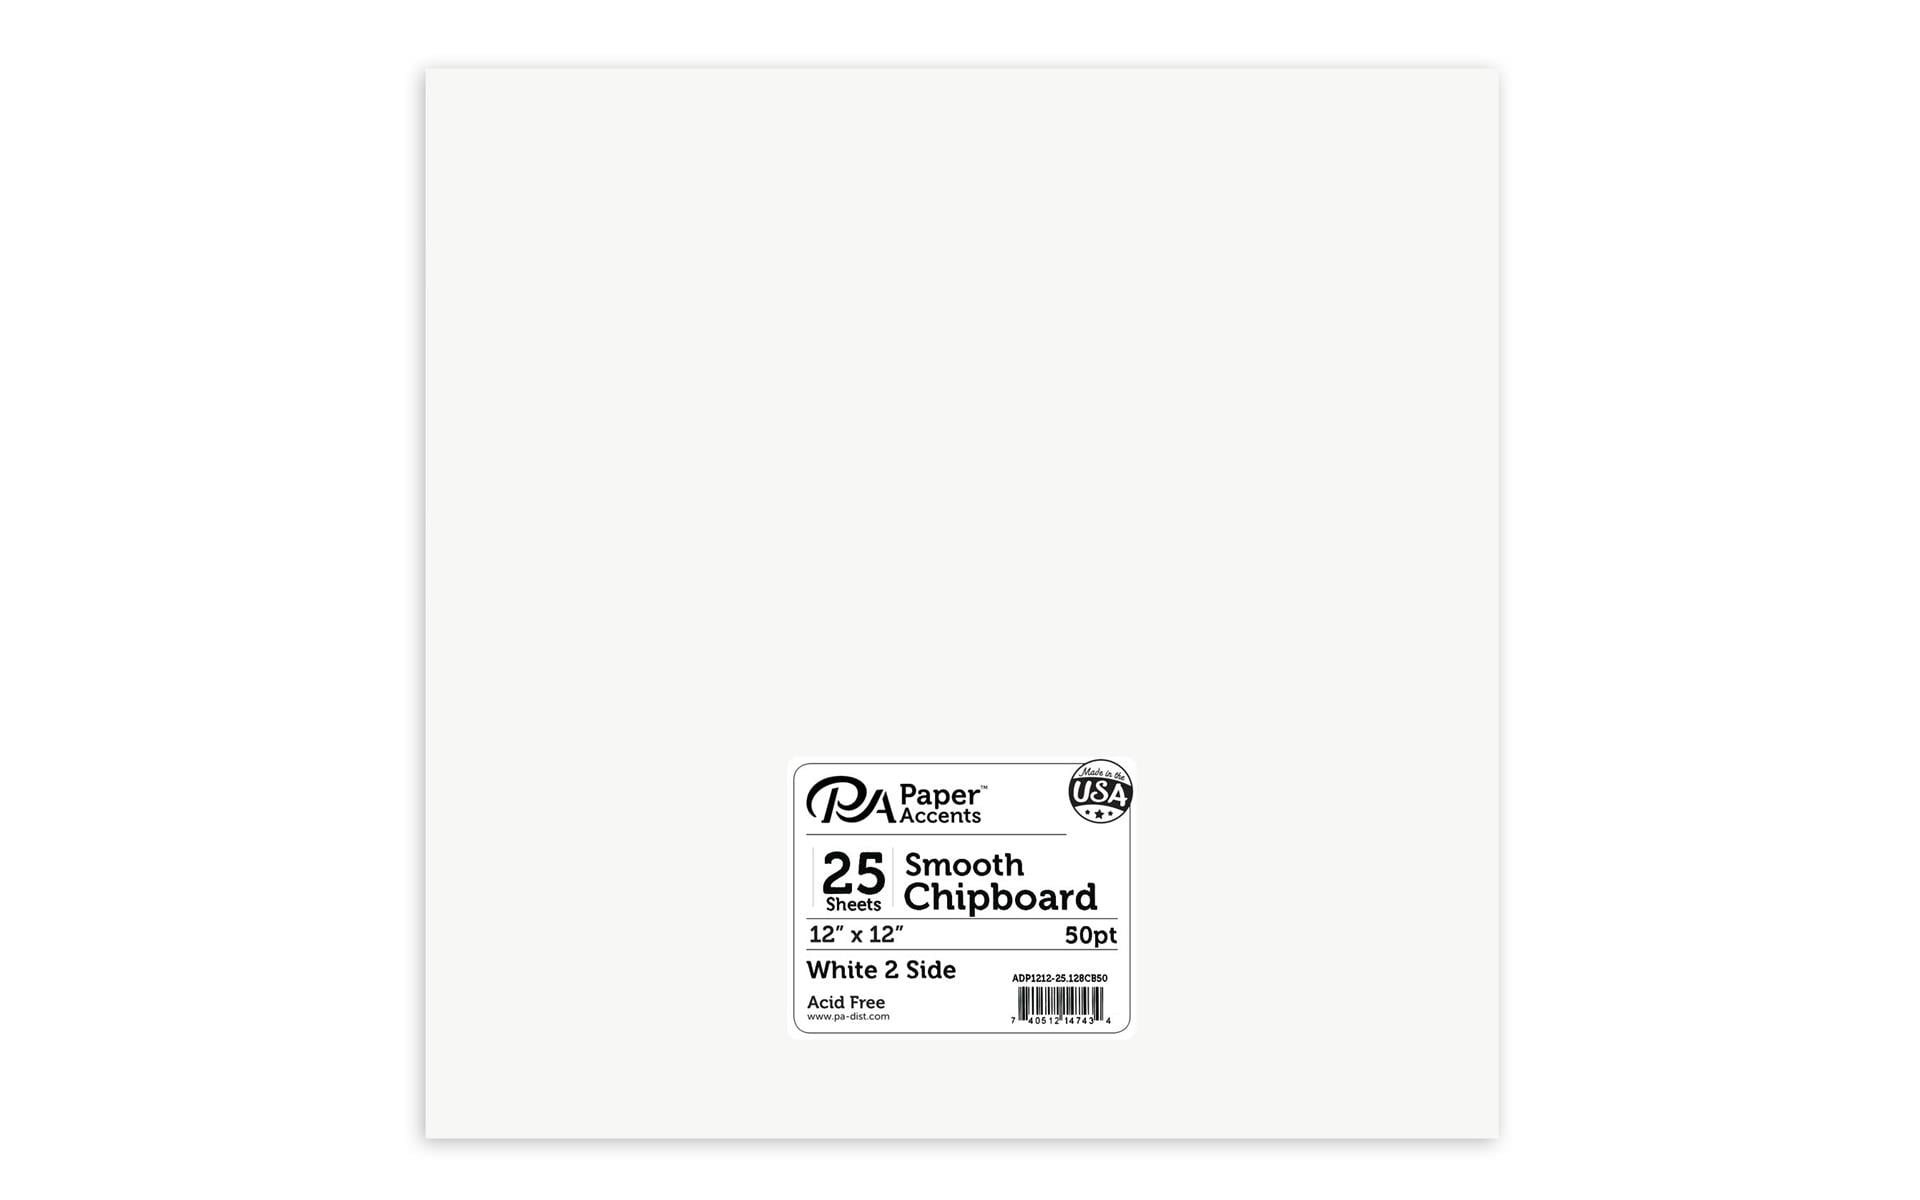  Silhouette Chipboard 12x12 25/Pkg- : Arts, Crafts